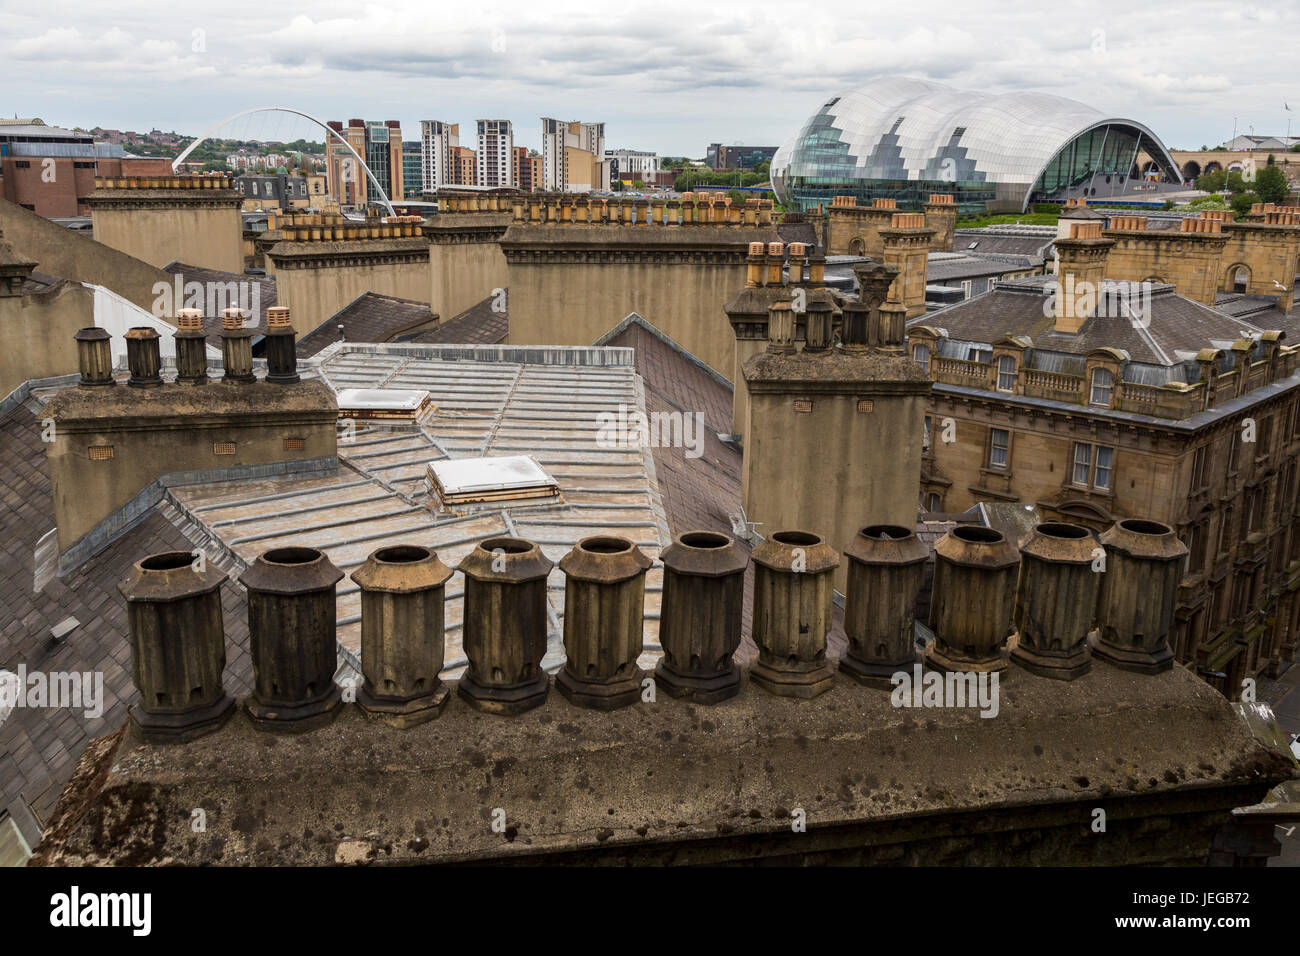 Newcastle-upon-Tyne, Angleterre, Royaume-Uni. Les cheminées et les toits de Newcastle. Le Sage les spectacles de l'autre côté de la rivière à Gateshead sur l'extrême droite. Banque D'Images